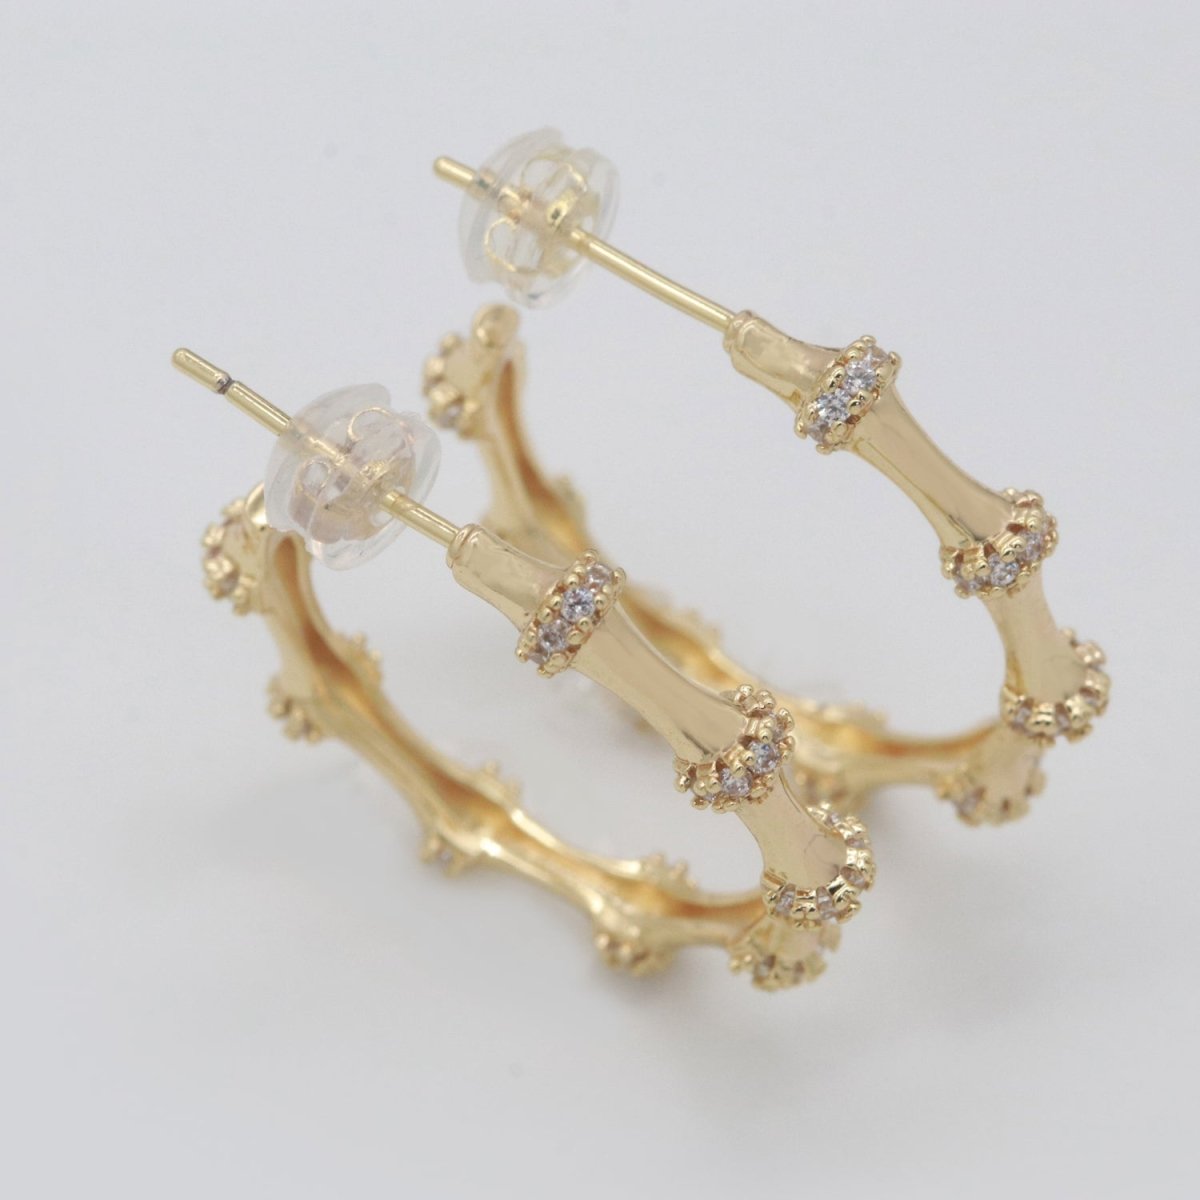 Gold Earrings, Cz Hoops Earring, Dainty Earrings, Chunky Bamboo Earrings, Everyday Wear Earrings, Statement Earring, 25mm Earring T-155 - DLUXCA